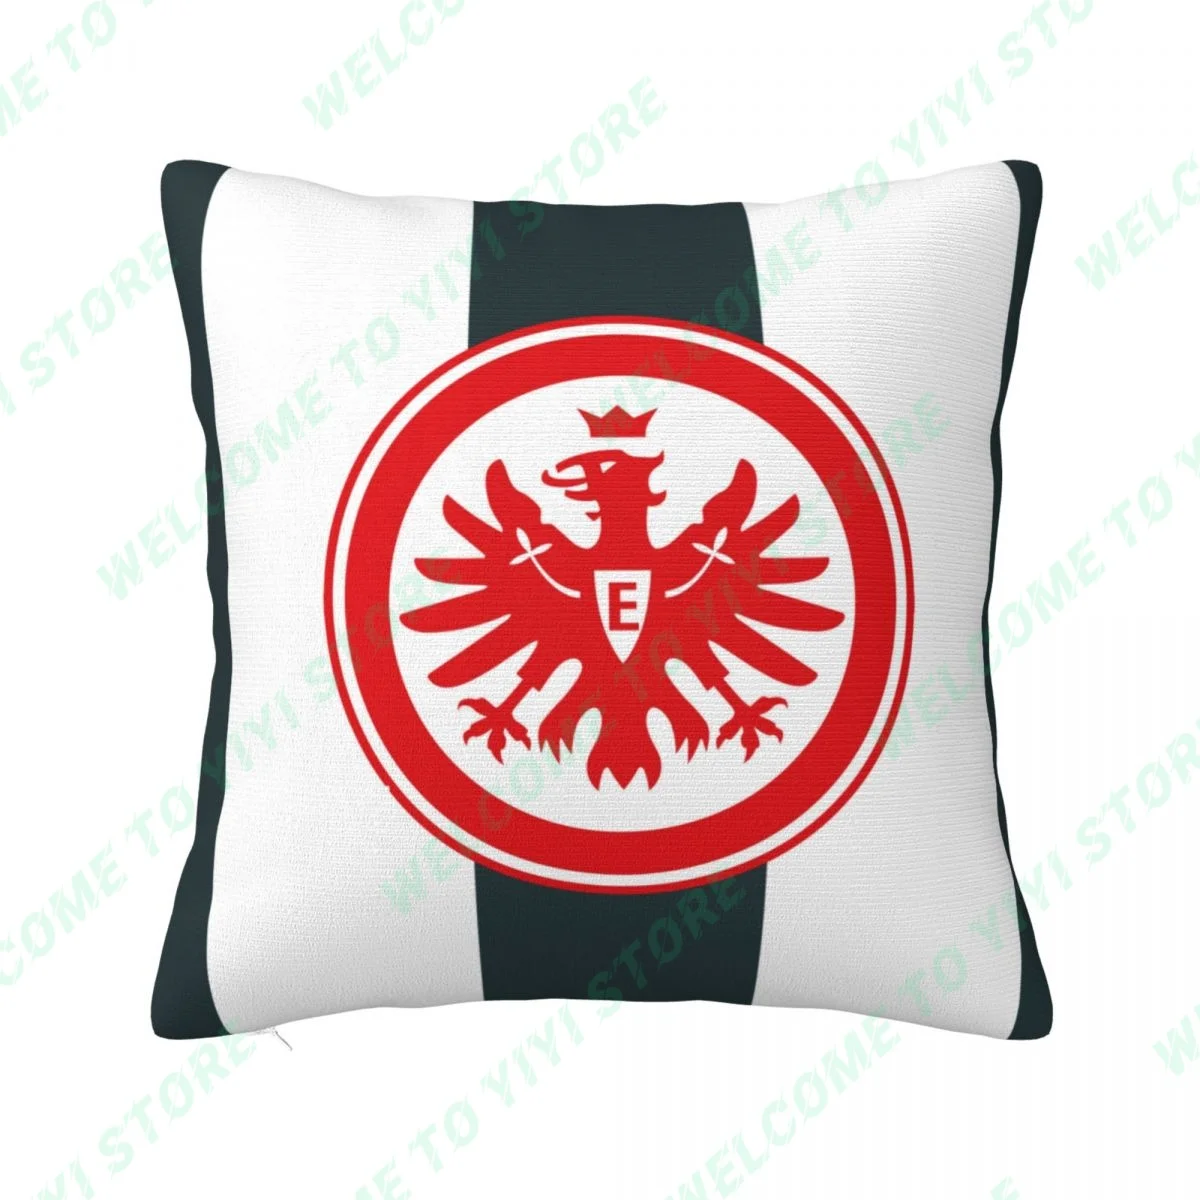 Taie d'oreiller décorative Eintracht FrankindexFuball AG, housse de coussin pour voiture, canapé, salon, nouveau